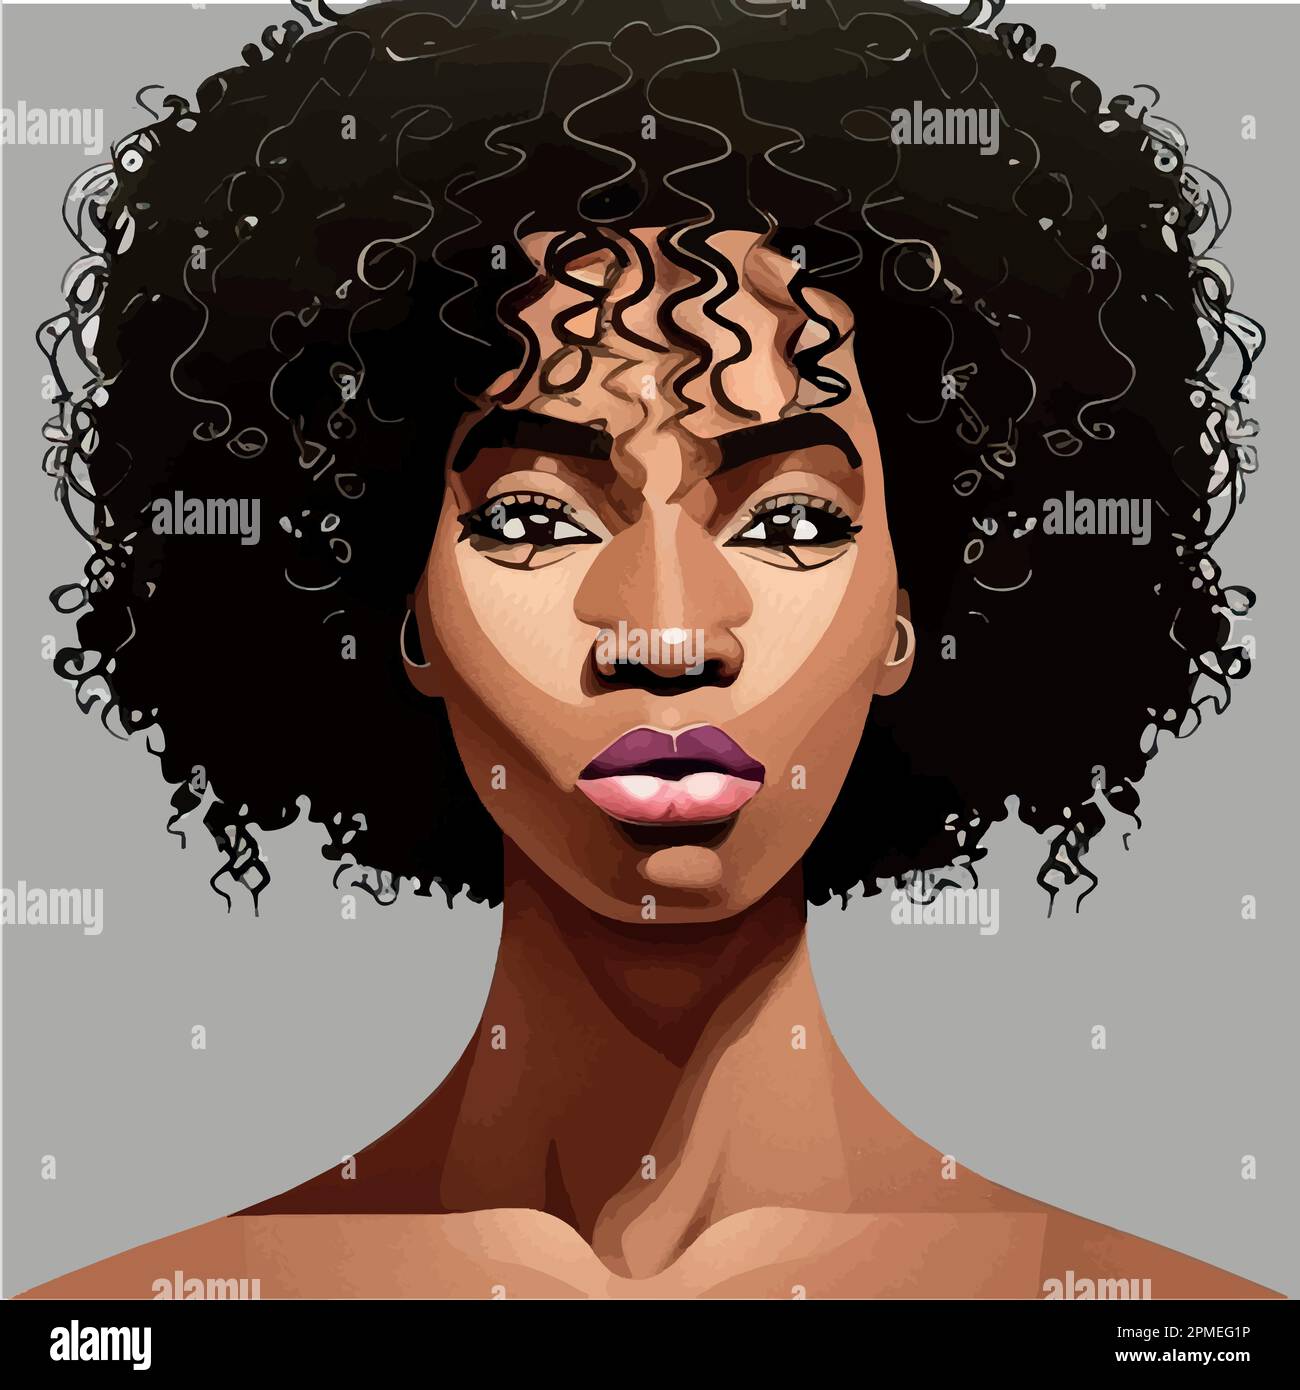 Afro Drawing Images  Free Download on Freepik